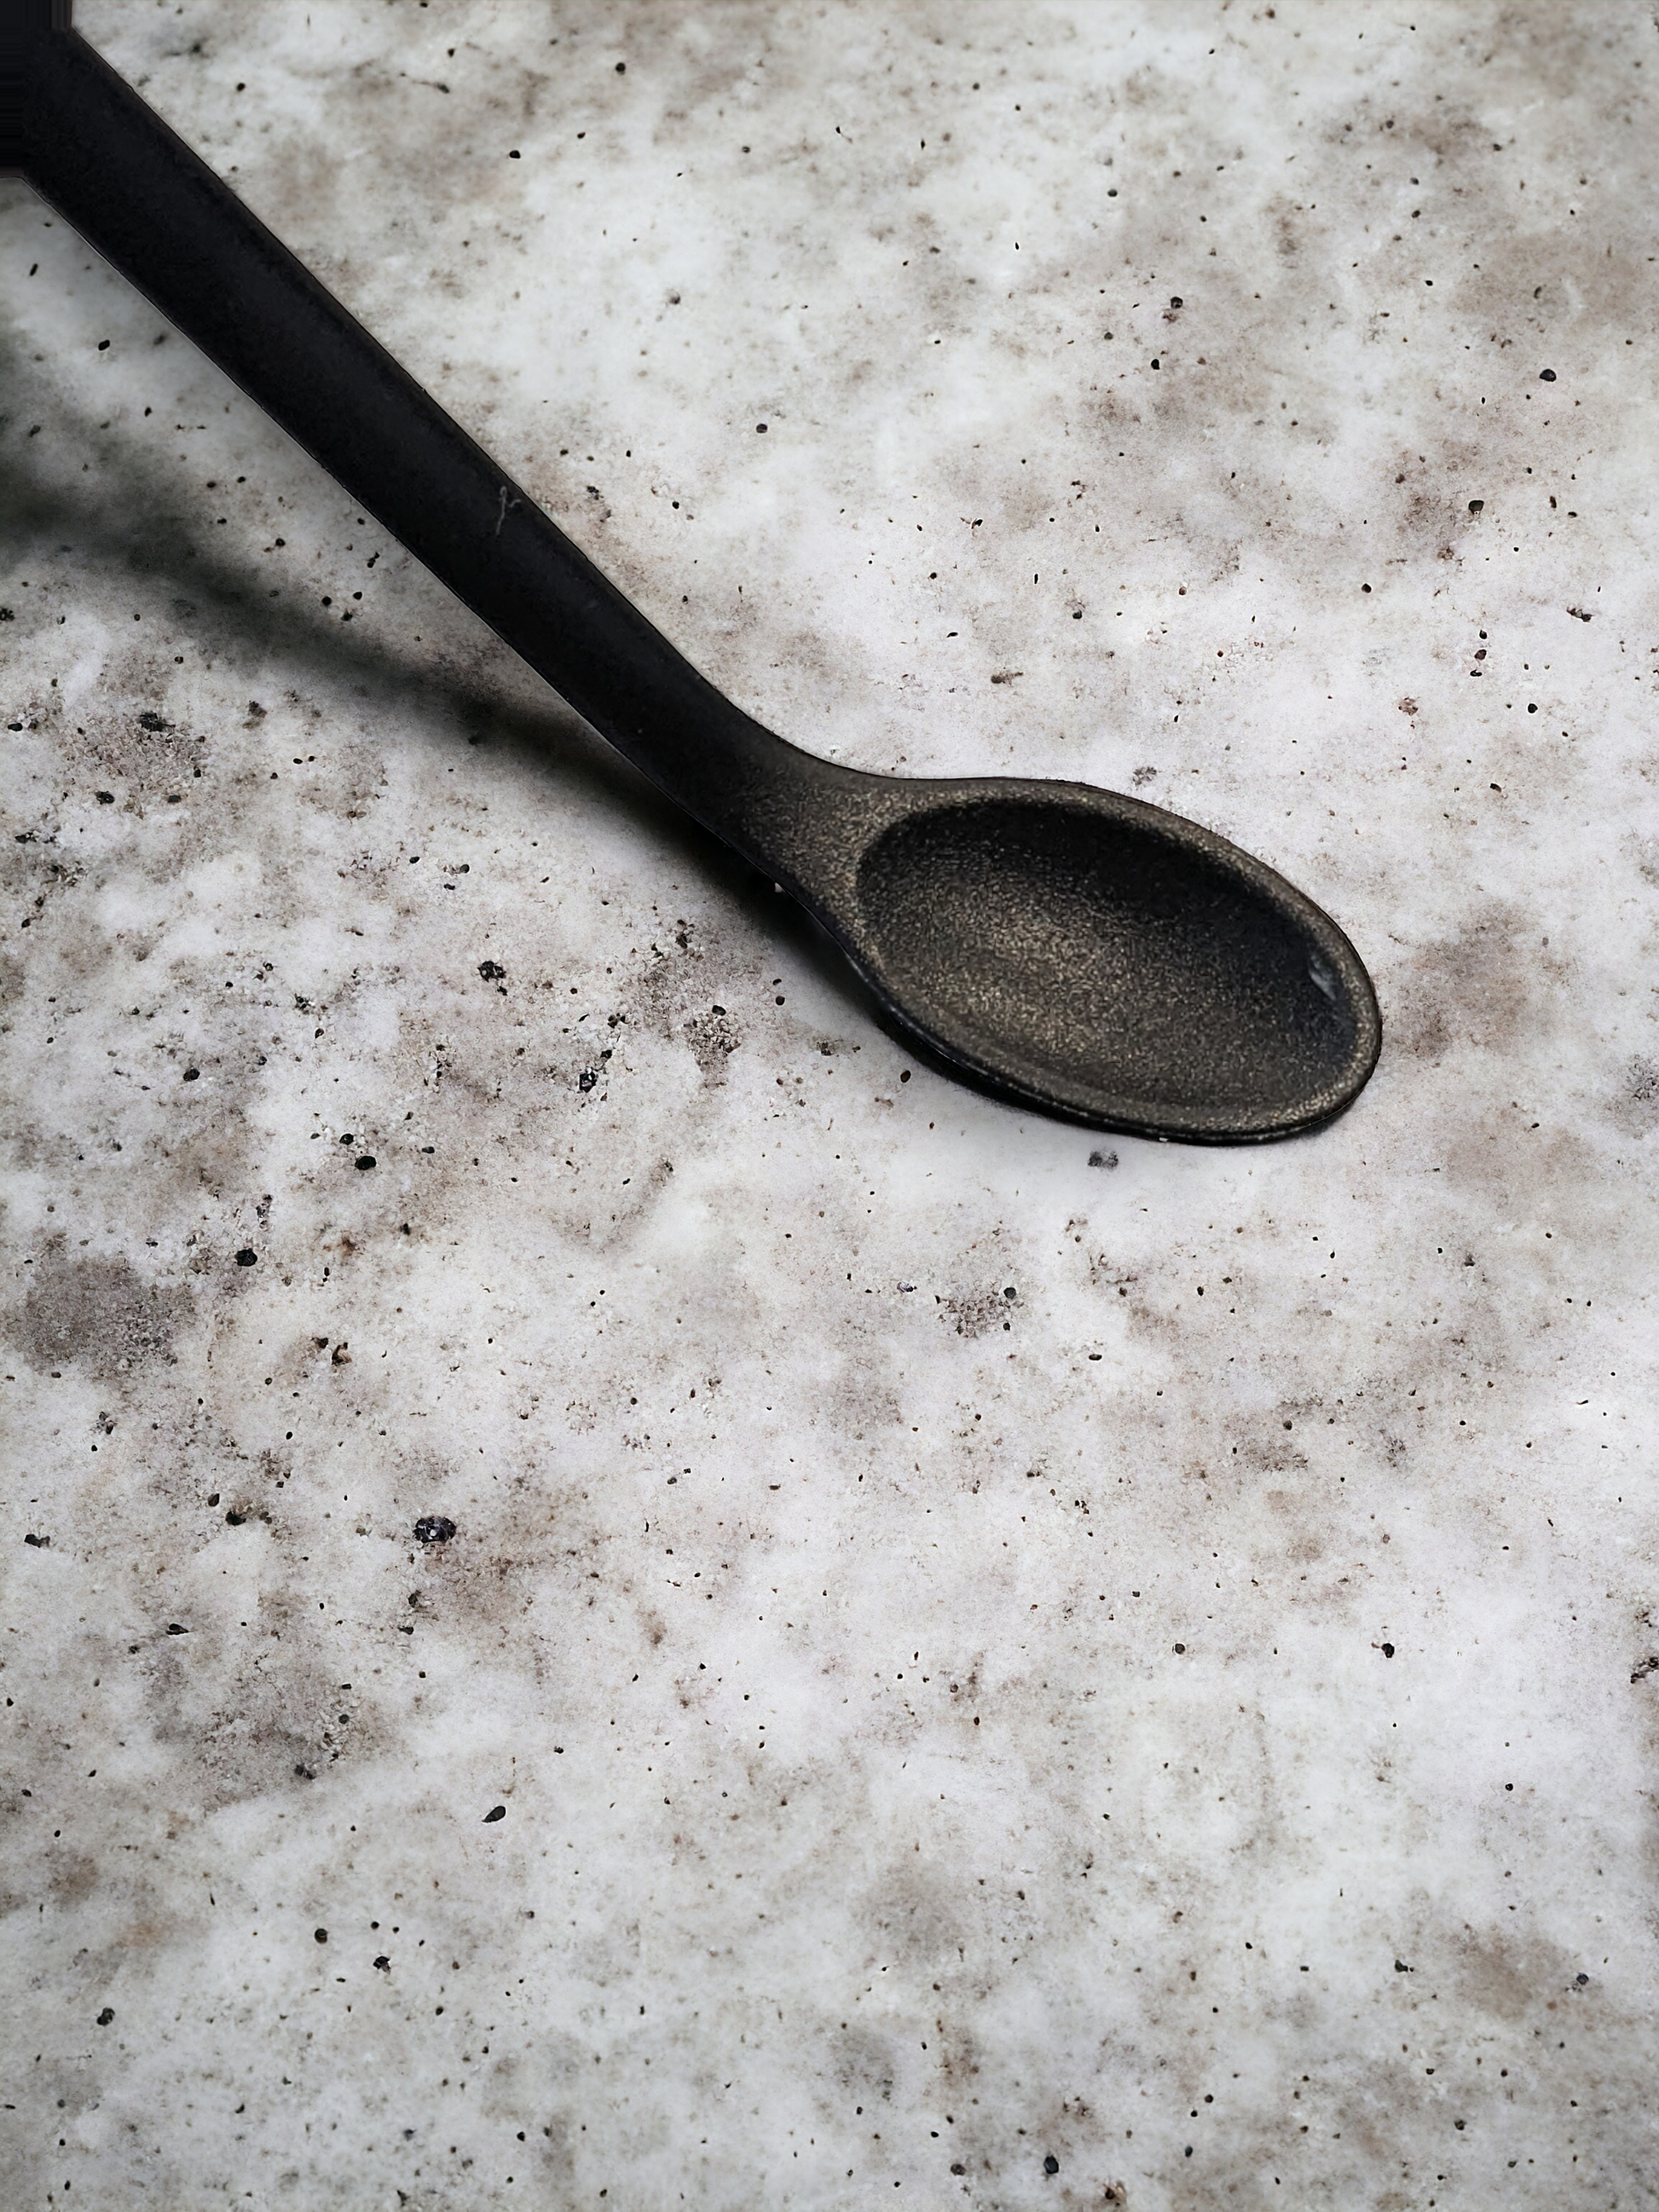 Mini spatula, silicone flexible spoon end, Apothecuryous